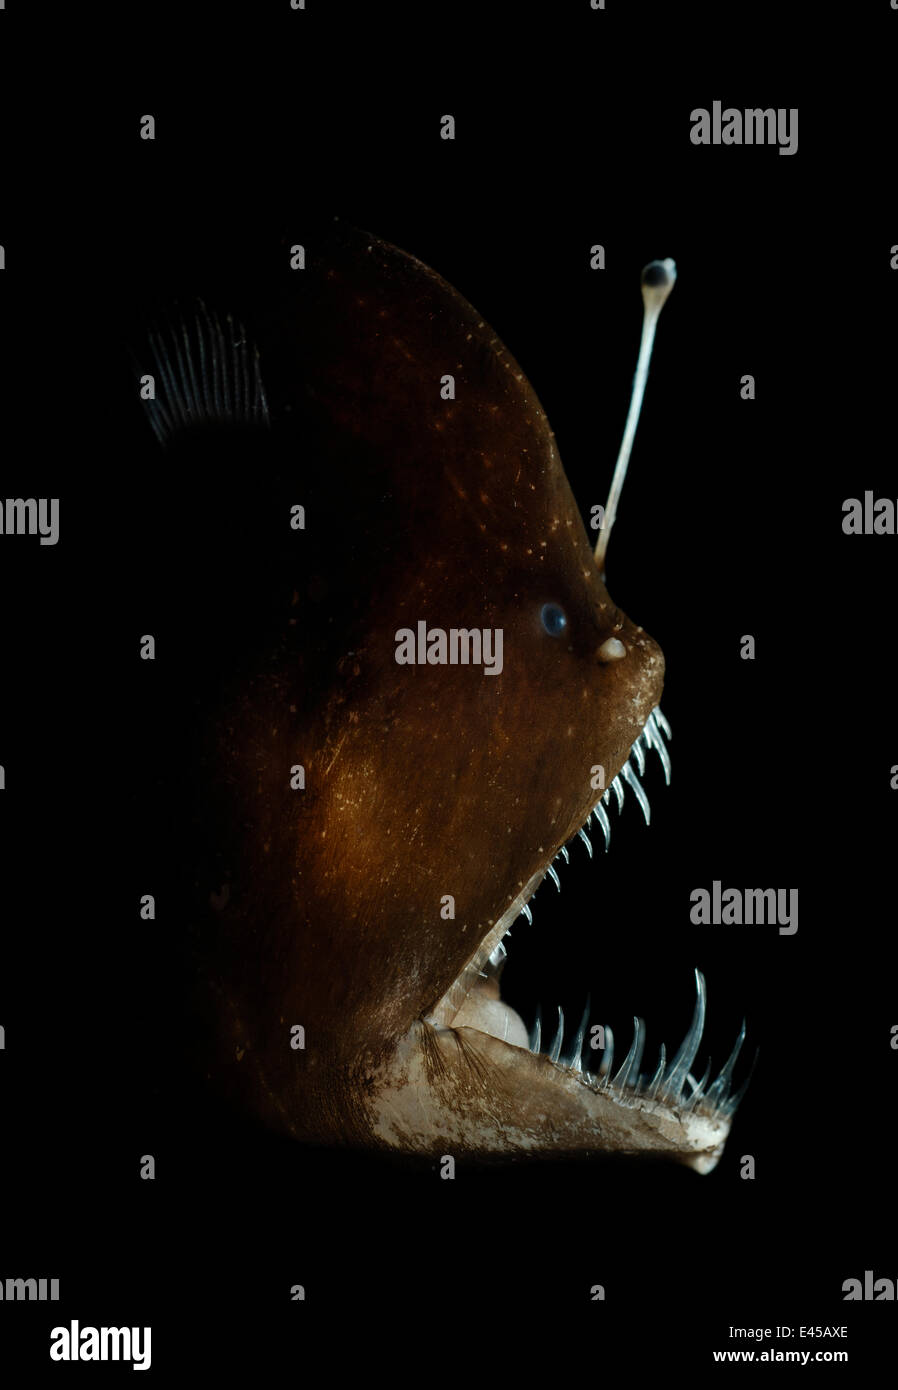 Murrays baudroie abyssale (Melanocetus murrayi) Océan Atlantique. Un poisson d'eau profonde avec leurre bioluminescent utilisés pour attirer les proies. La bioluminescence est produit par les bactéries symbiotiques ; ces bactéries sont pensés pour saisir l'esca via un conduit externe. Banque D'Images